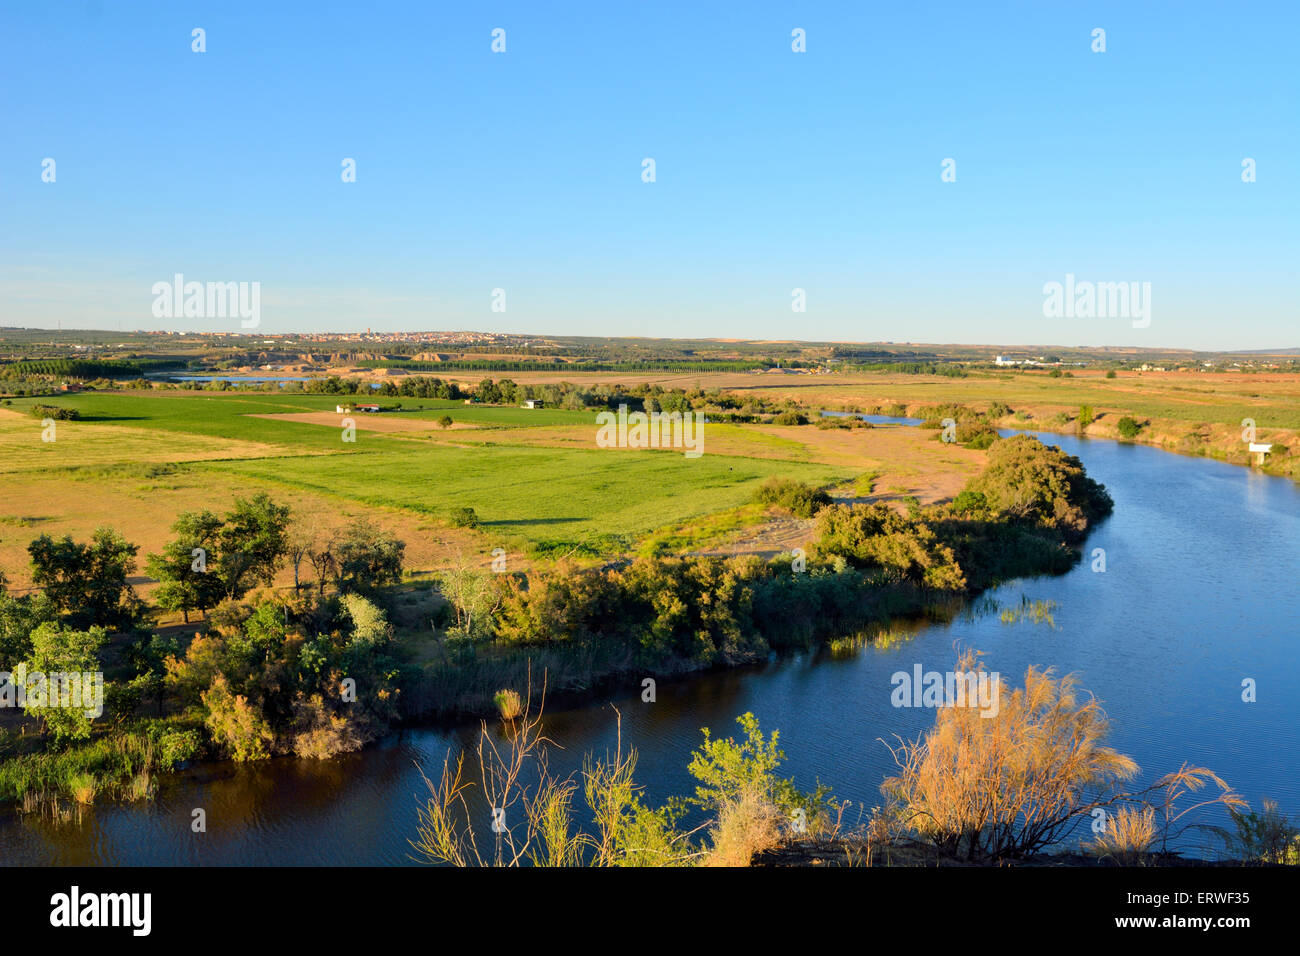 River Tajo in outside Toledo near La Puebla in province of Castilla-La Mancha, Spain Stock Photo